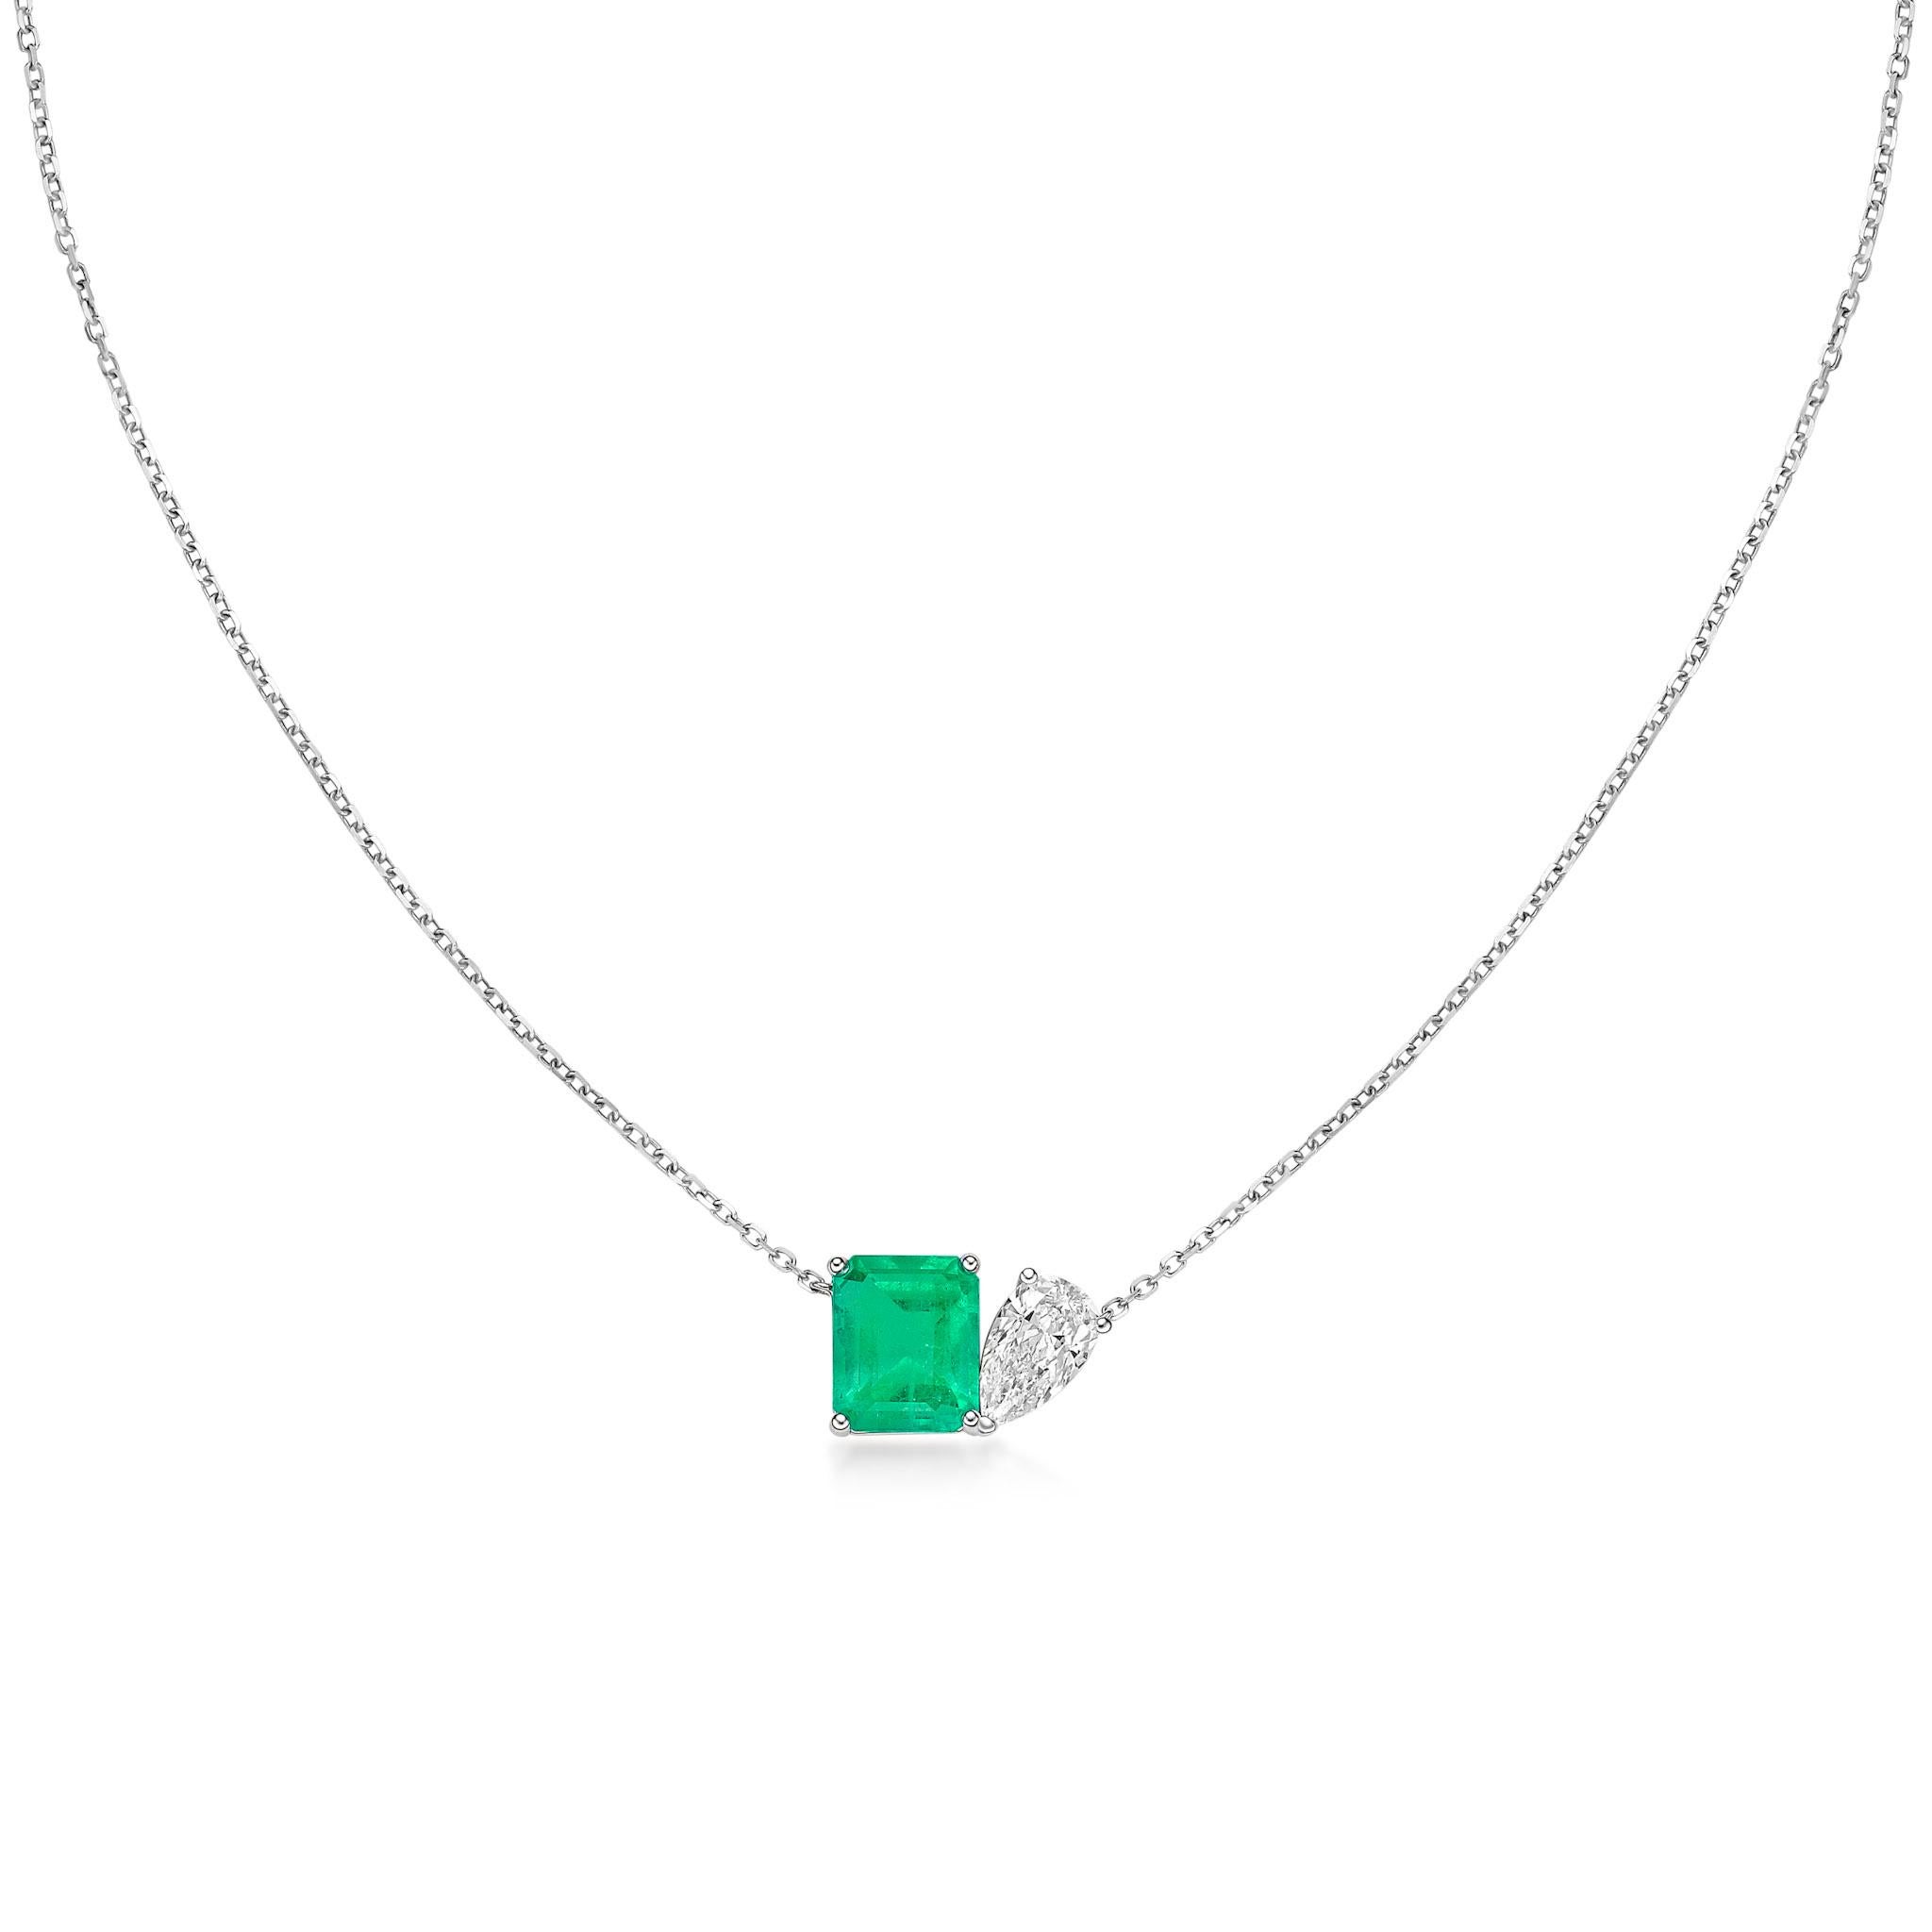 Atemberaubende moderne Toi et Moi Halskette mit einem farblosen birnenförmigen Diamanten und einem üppigen Smaragd. Der Kontrast zwischen den beiden Steinen und die lässige, moderne Fassung machen diese Halskette zu einem Tag- und Nachtbegleiter.